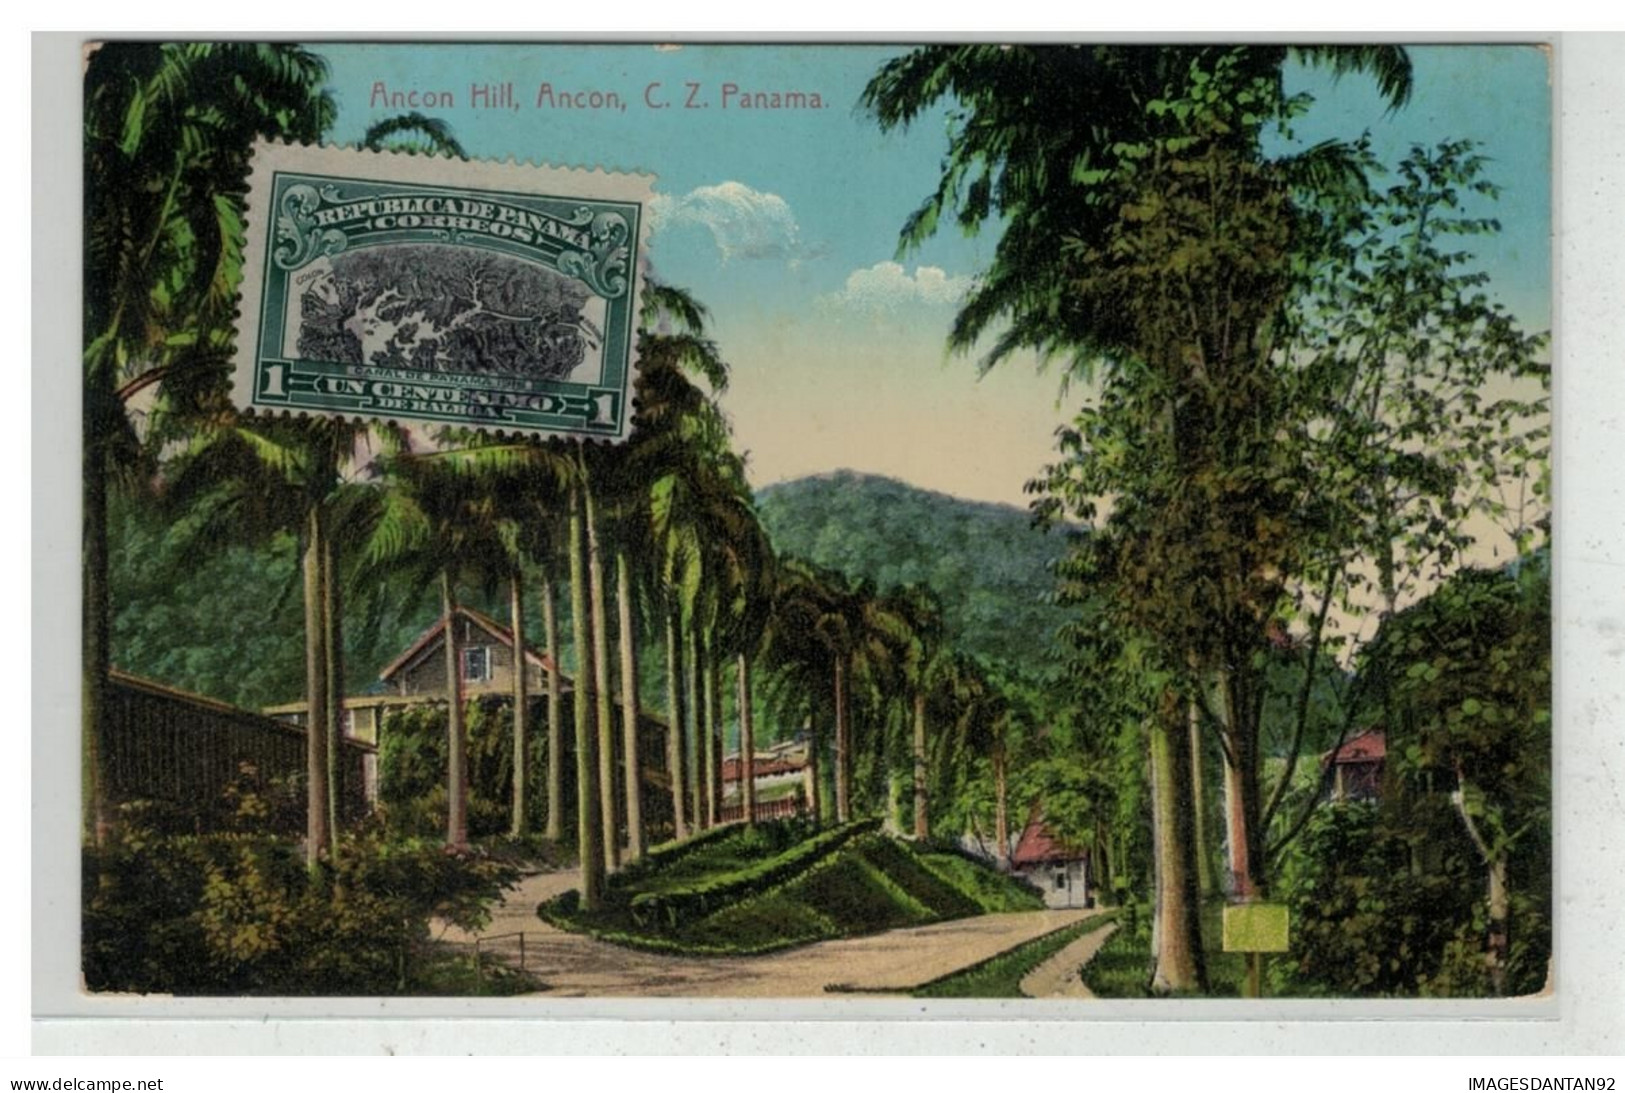 PANAMA #17624 ANCON HILL - Panama